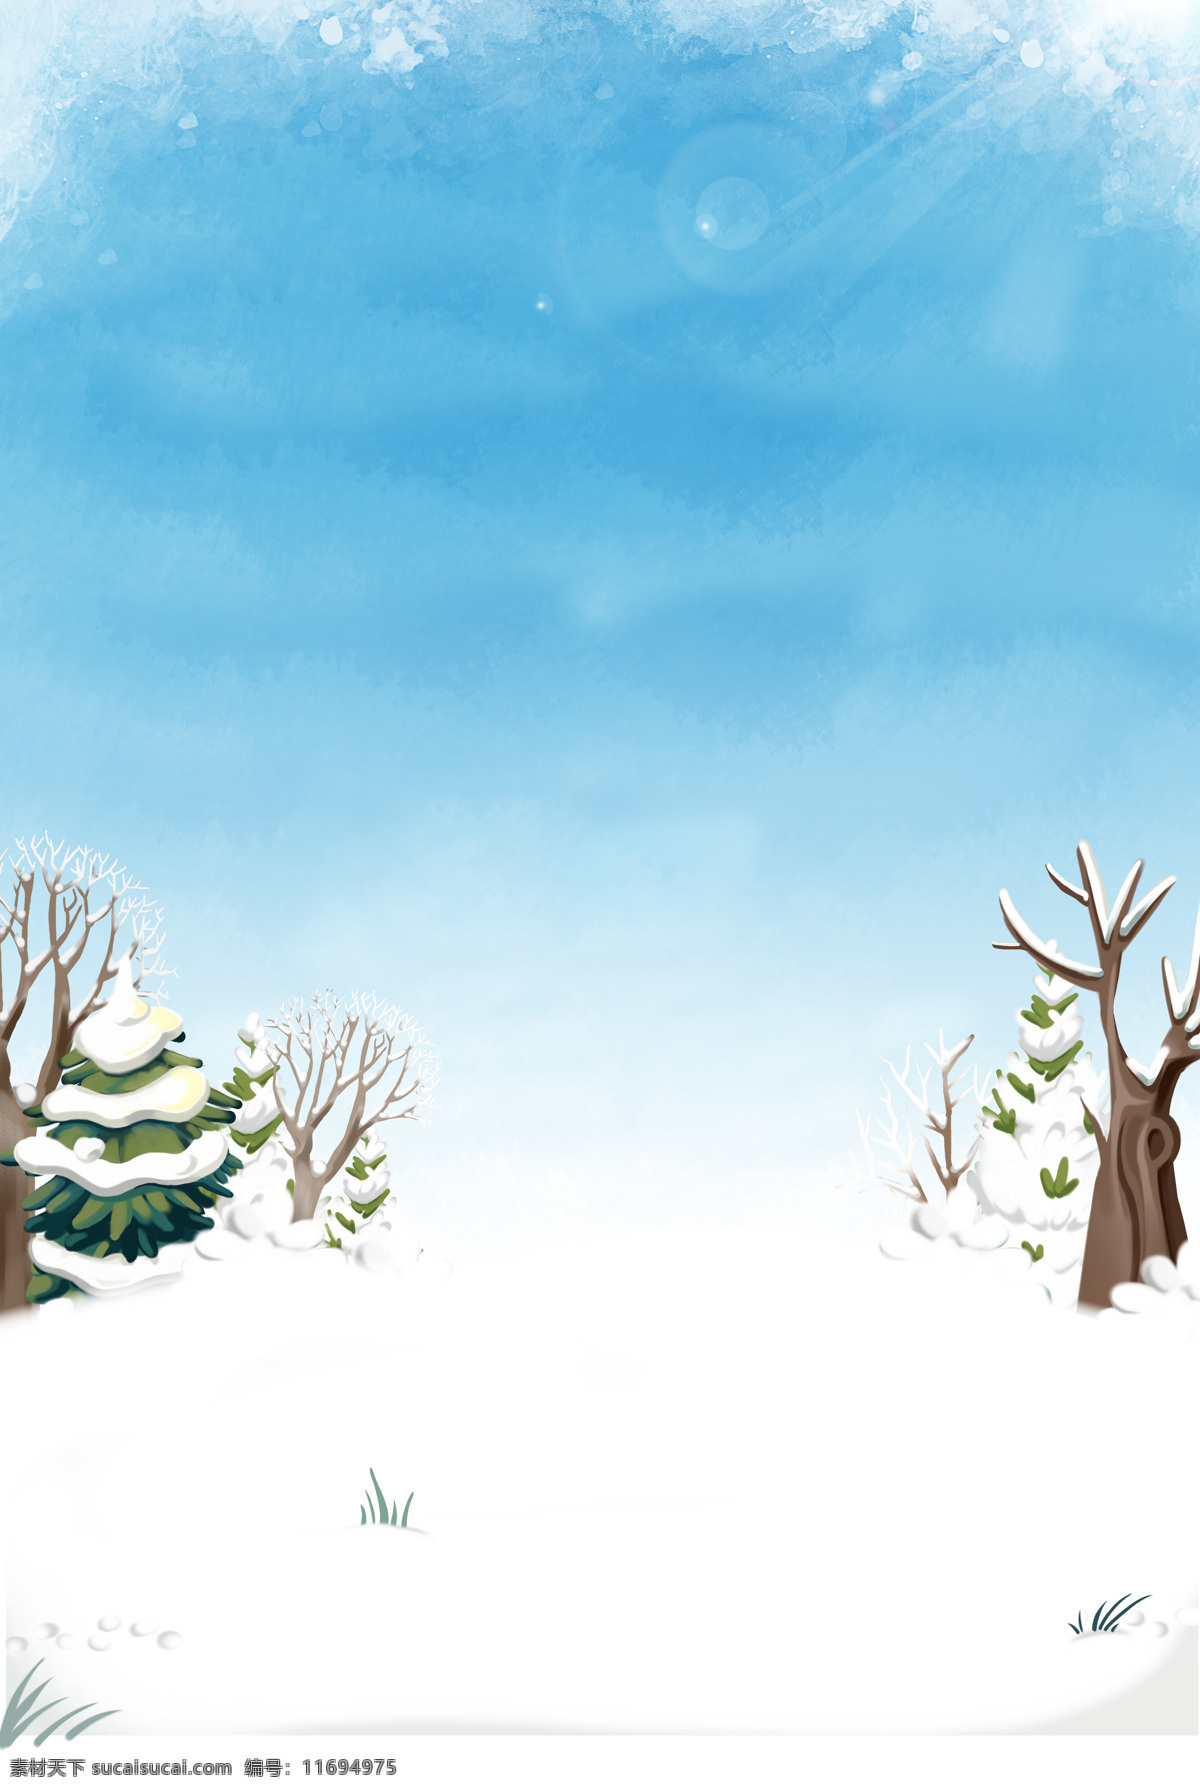 冬季 扁平 简洁 卡通 背景 冬天 树木 雪地 积雪 手绘 圣诞节 圣诞树